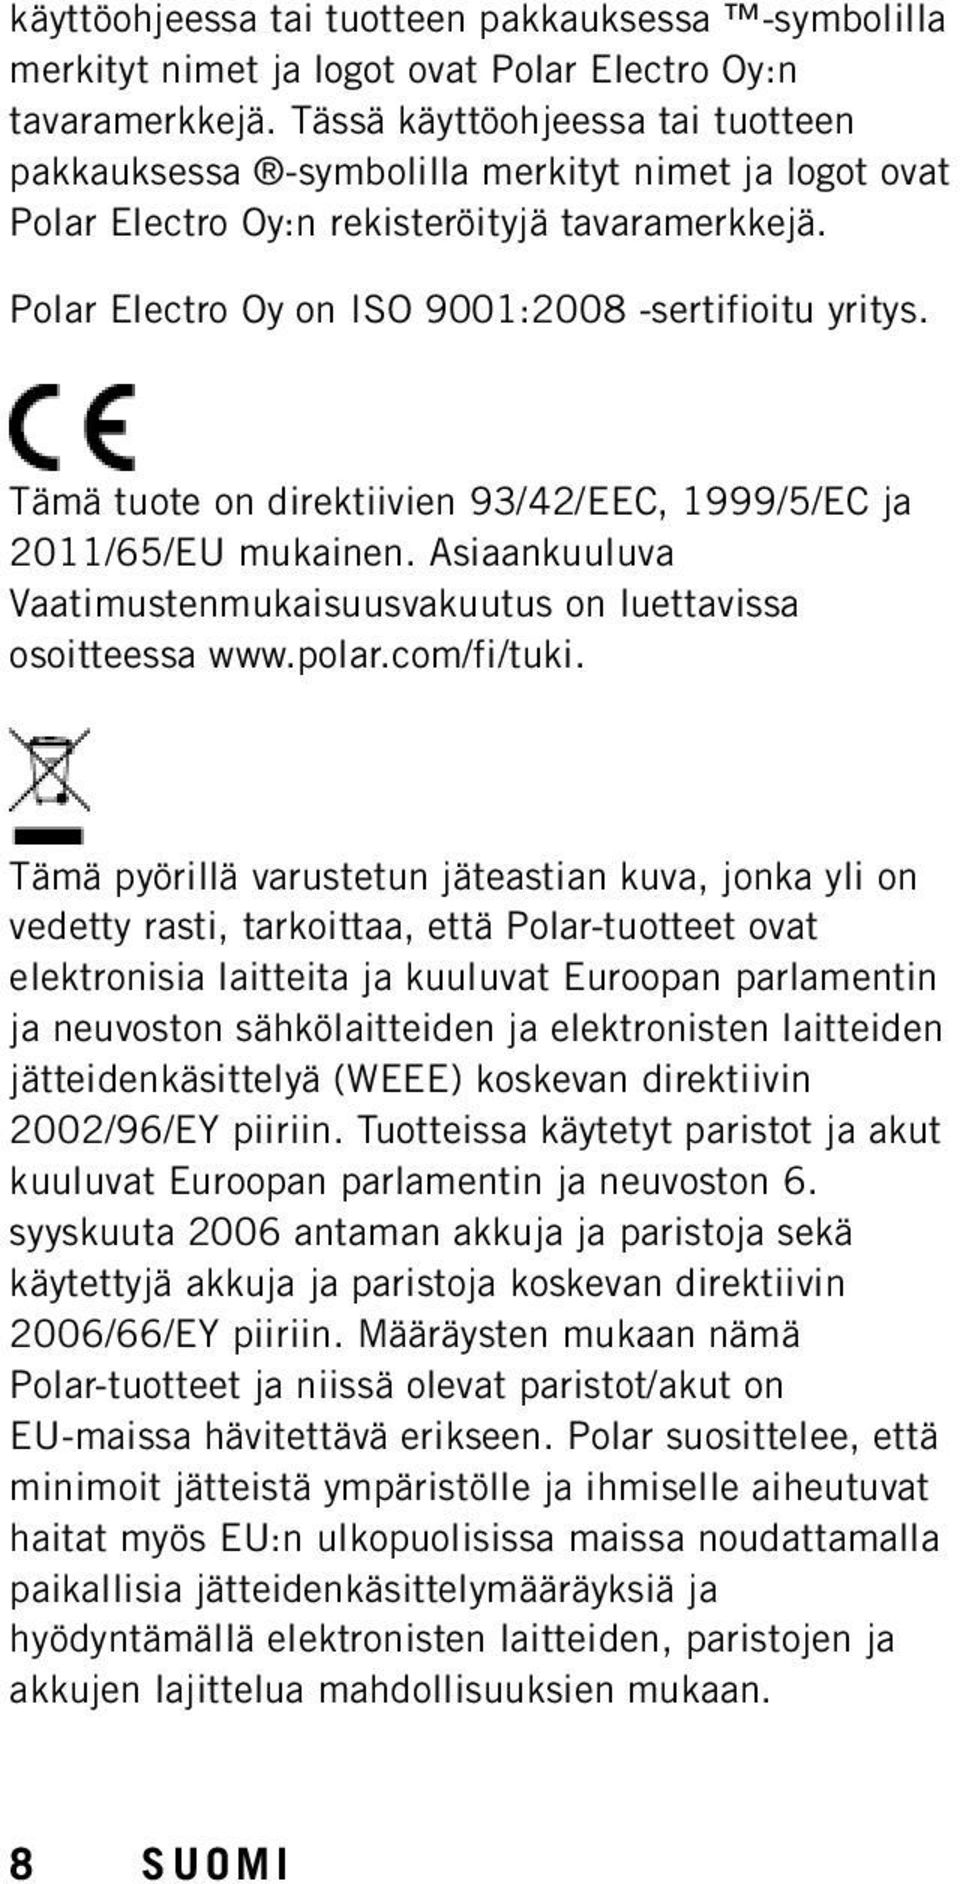 Tämä tuote on direktiivien 93/42/EEC, 1999/5/EC ja 2011/65/EU mukainen. Asiaankuuluva Vaatimustenmukaisuusvakuutus on luettavissa osoitteessa www.polar.com/fi/tuki.